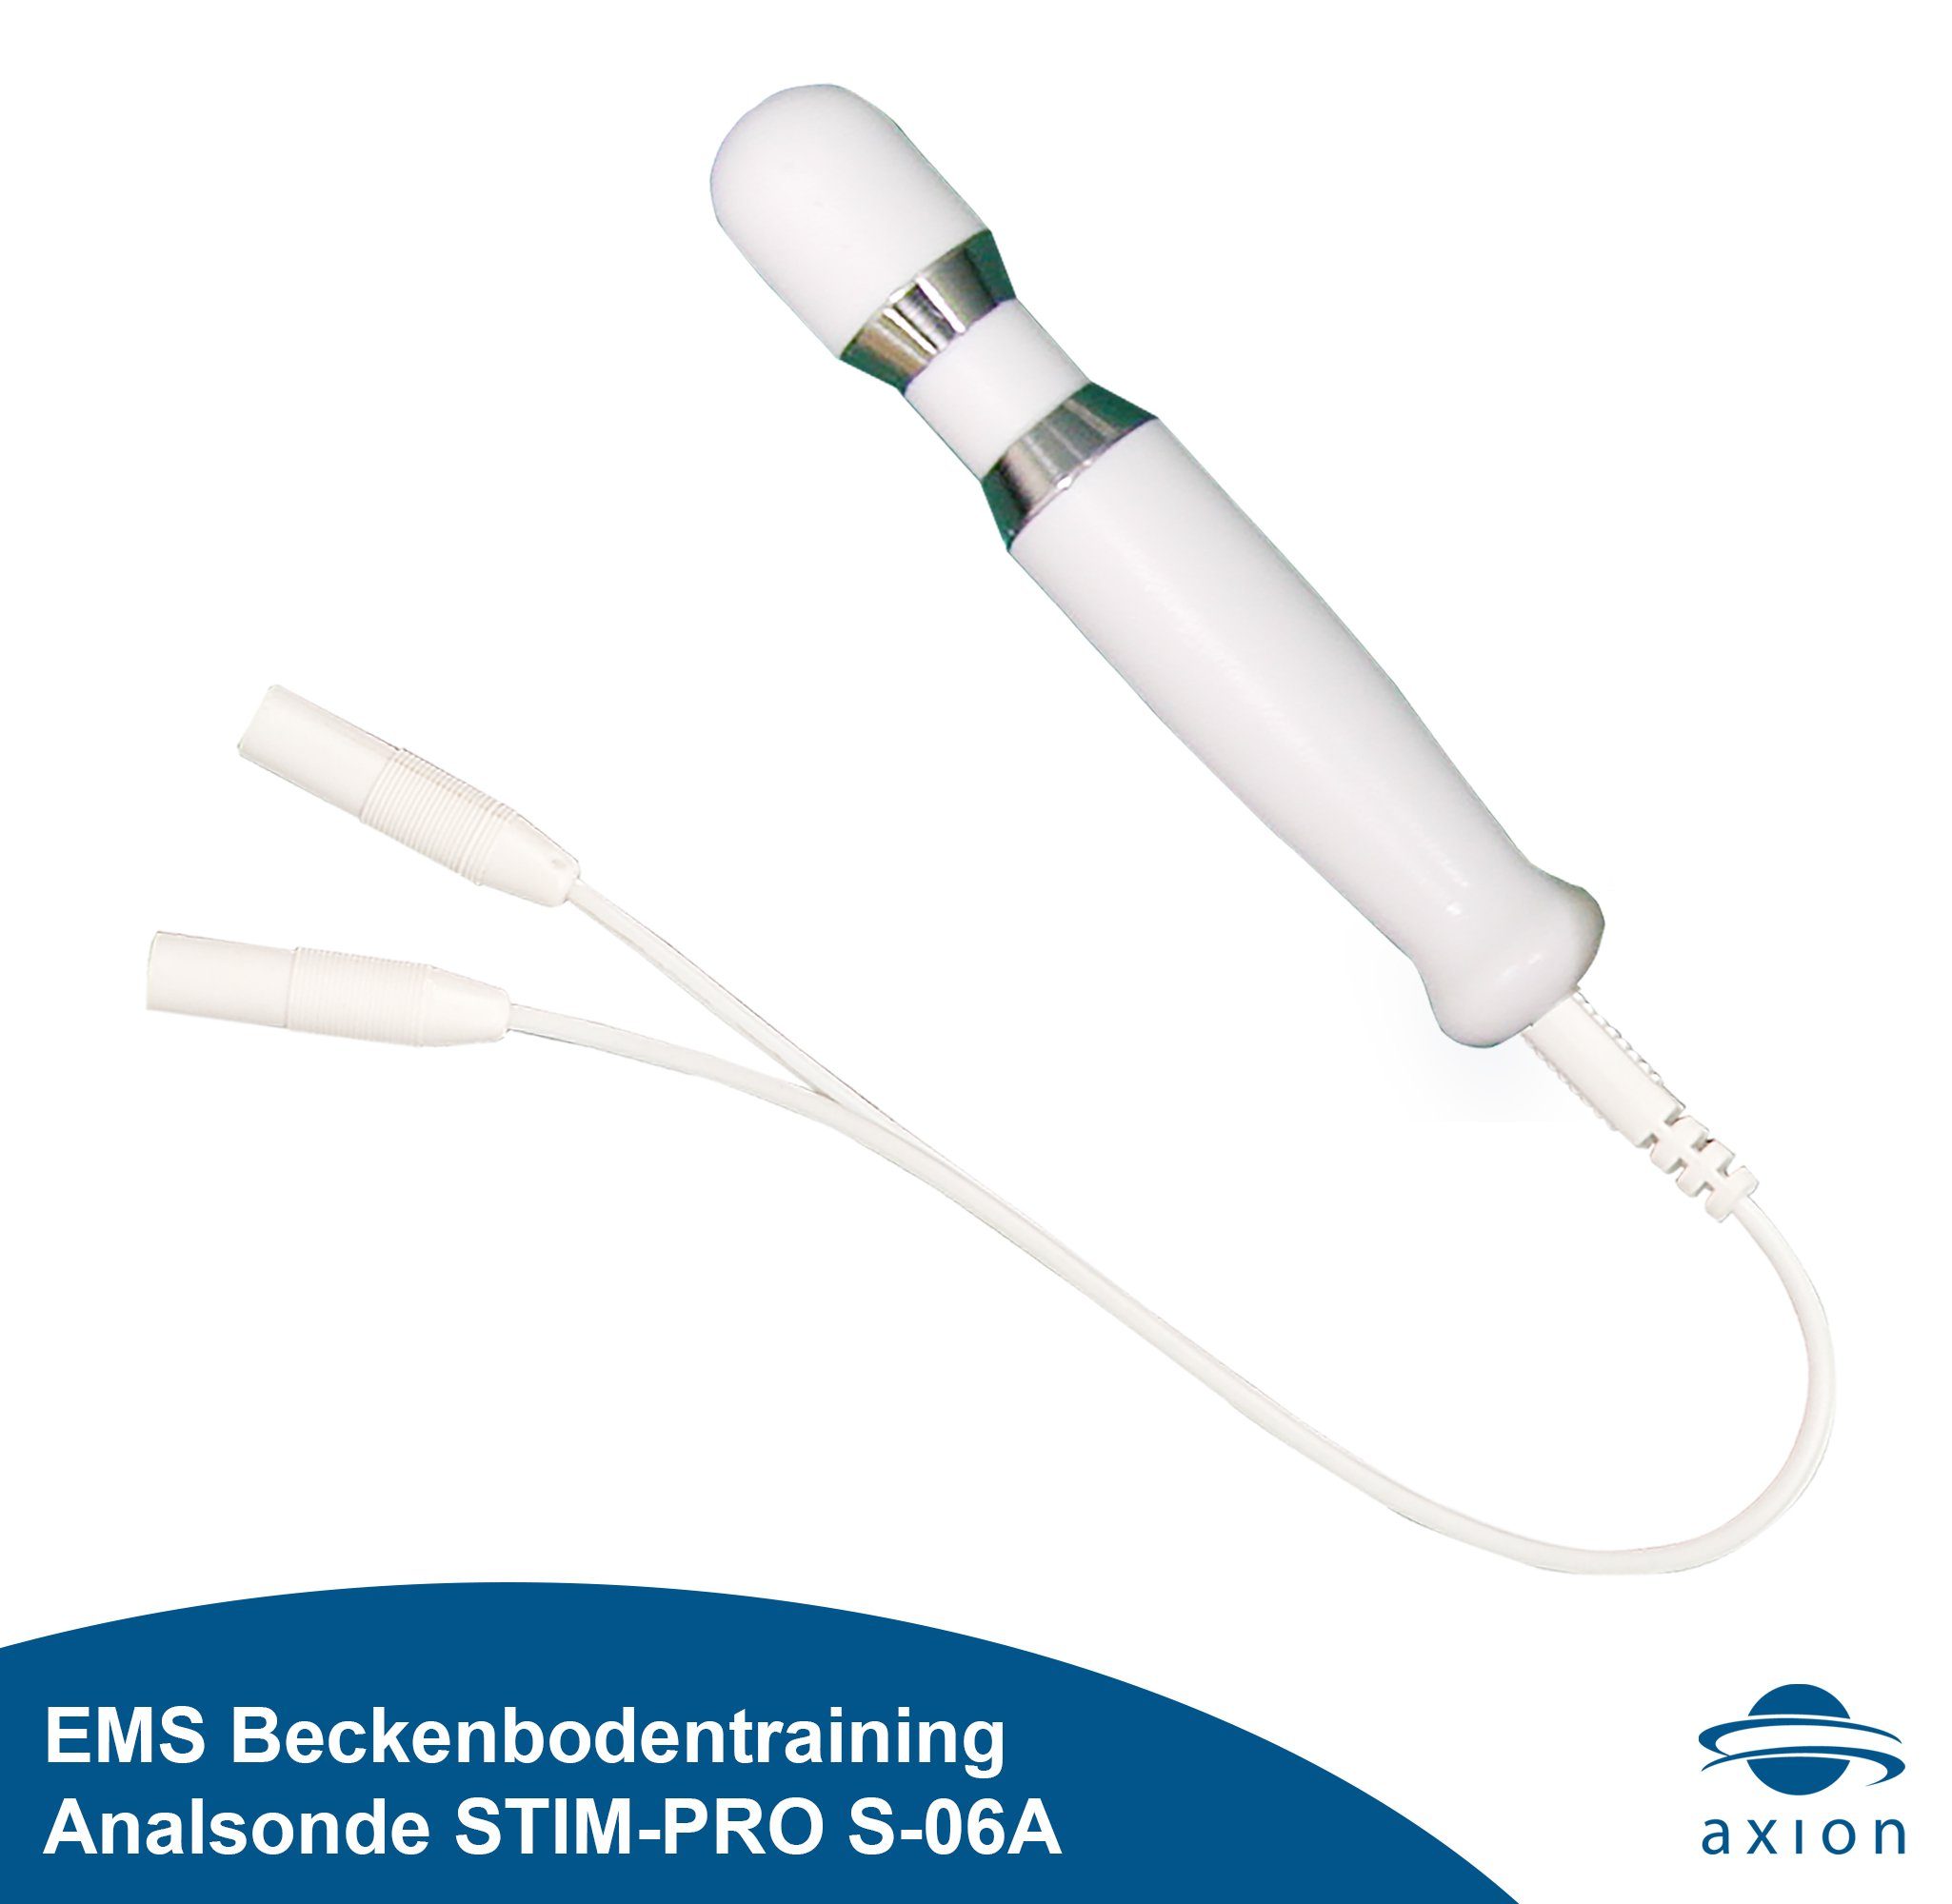 zur STIM-PRO von Beckenboden-Elektrostimulationsgerät (EMS Inkontinenz, erforderlich) Gerät Analsonde 6A EMS-Behandlung Axion